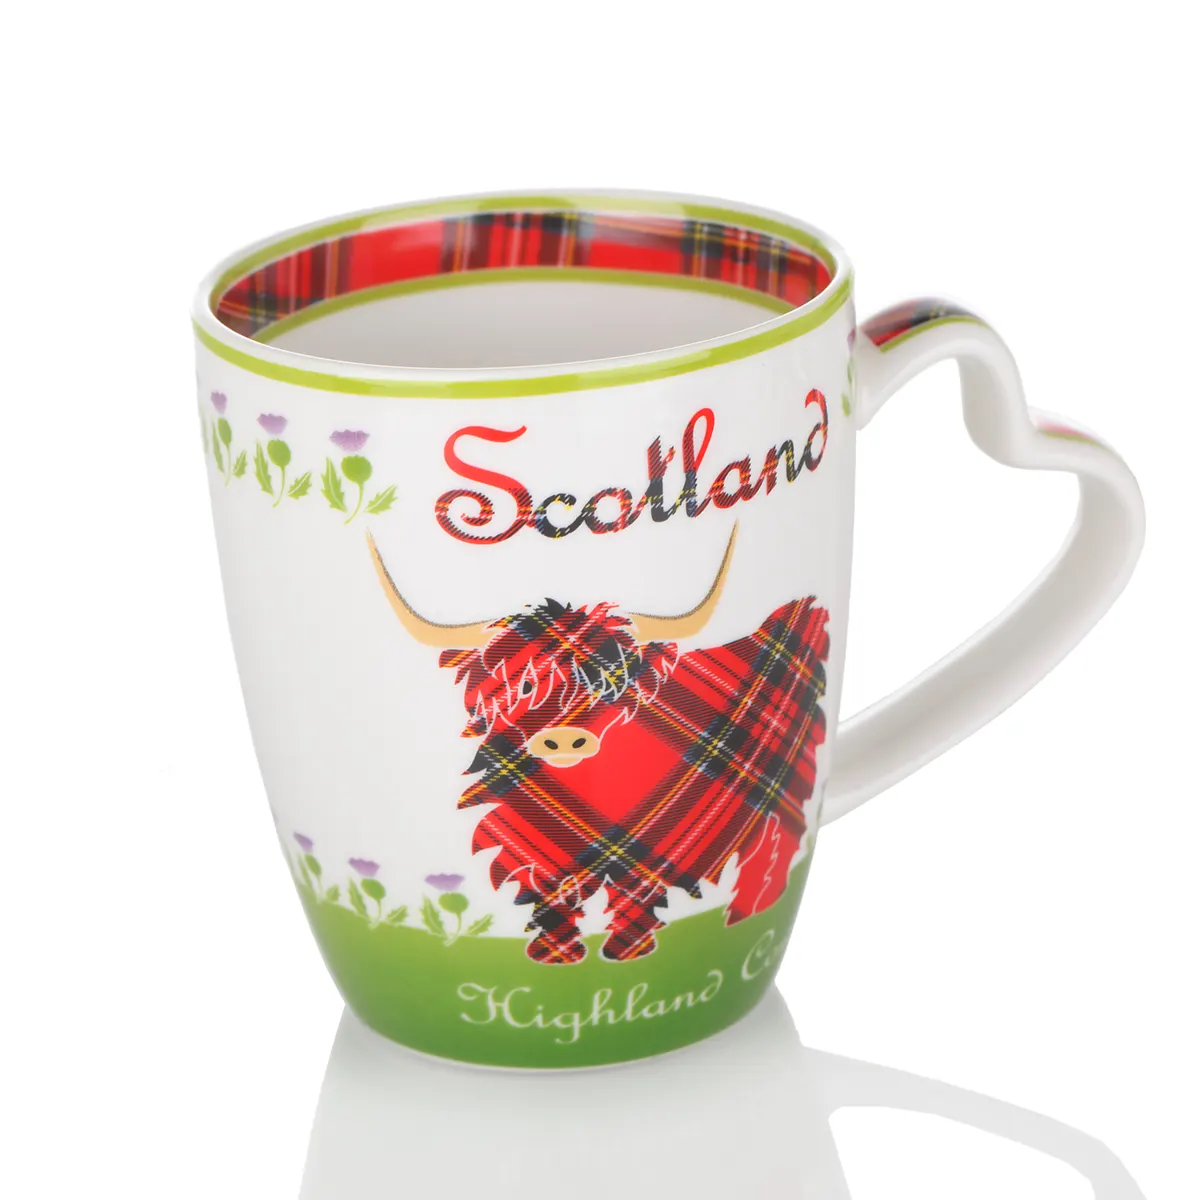 Highland Cow Mug - Kaffeebecher aus Keramik mit schottischem Rind & Tartan-Muster